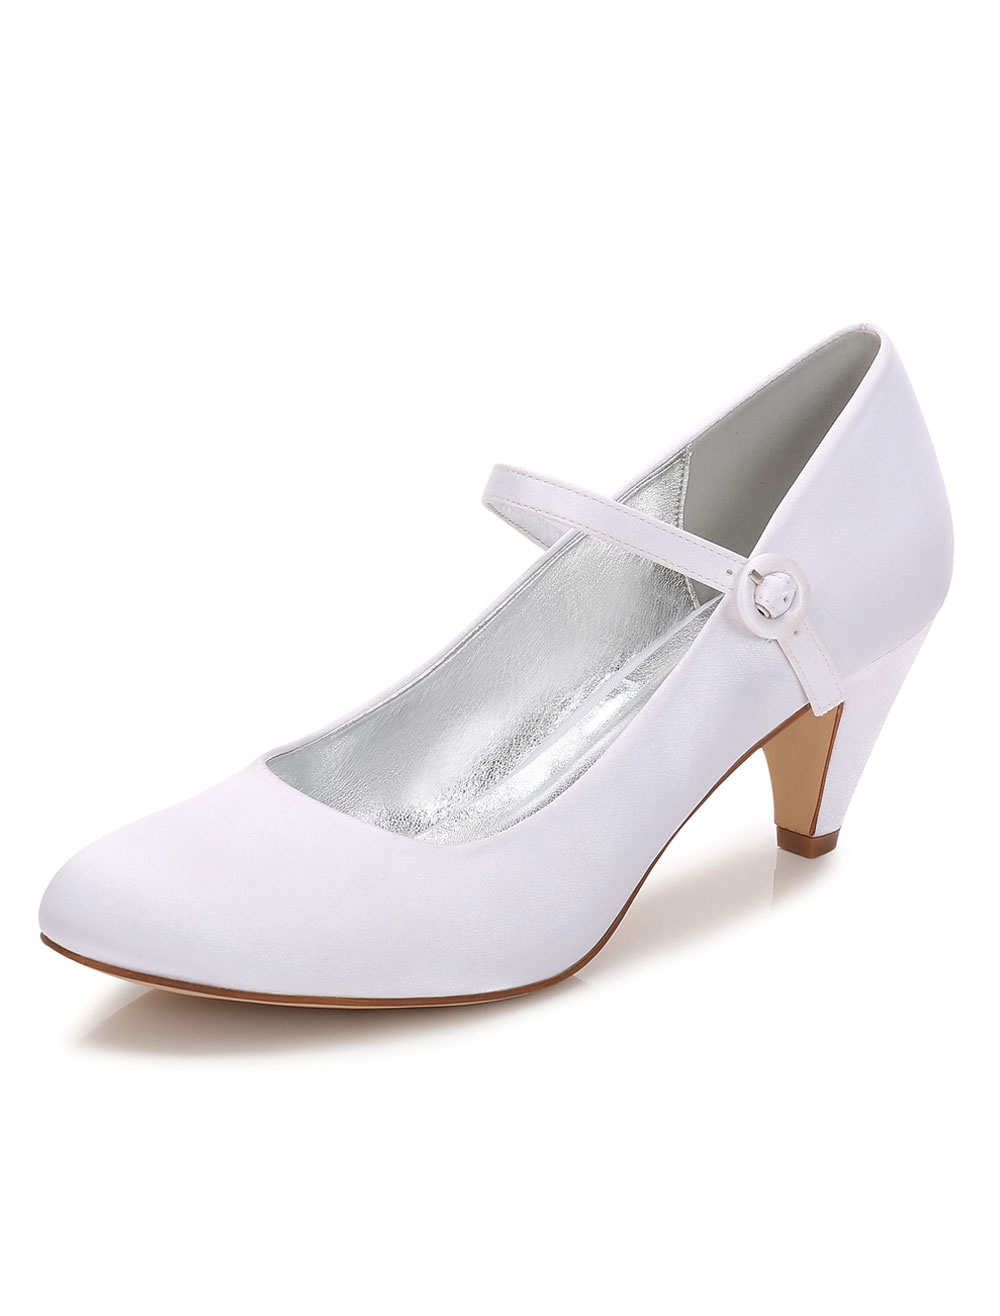 Women Wedding Shoes White Kitten Heels 